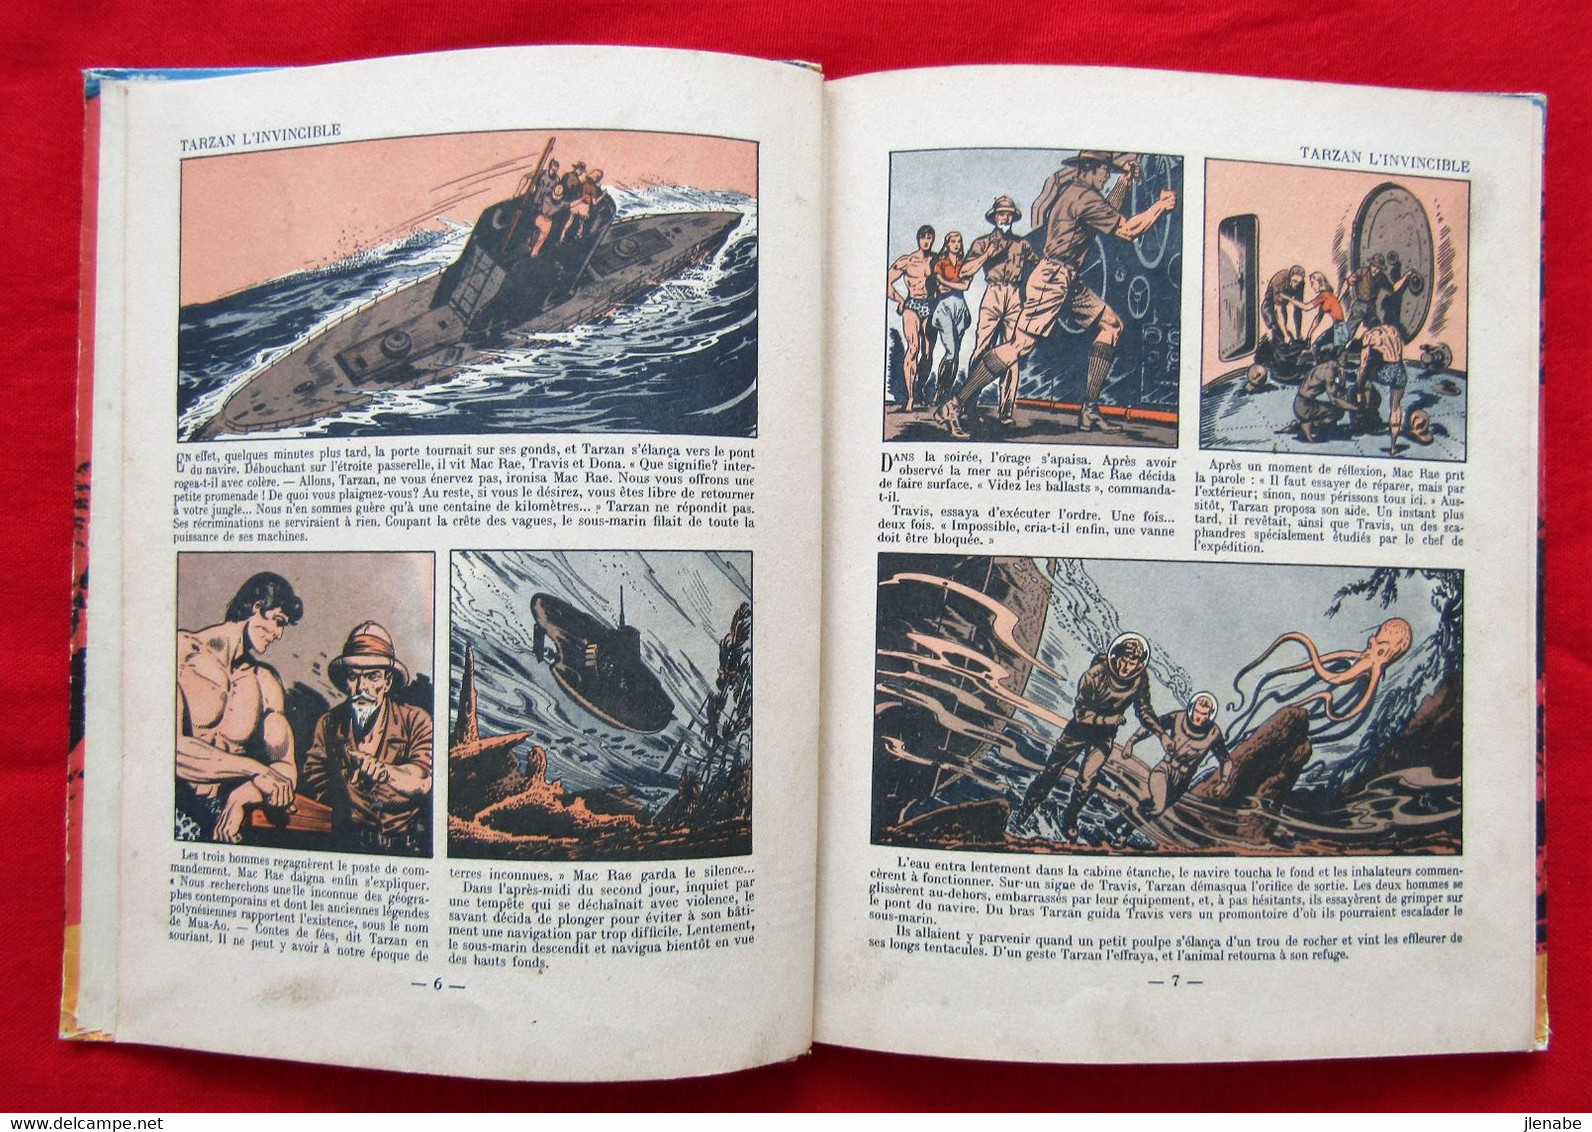 TARZAN L'INVINCIBLE Edition Originale de 1949 par HOGARTH